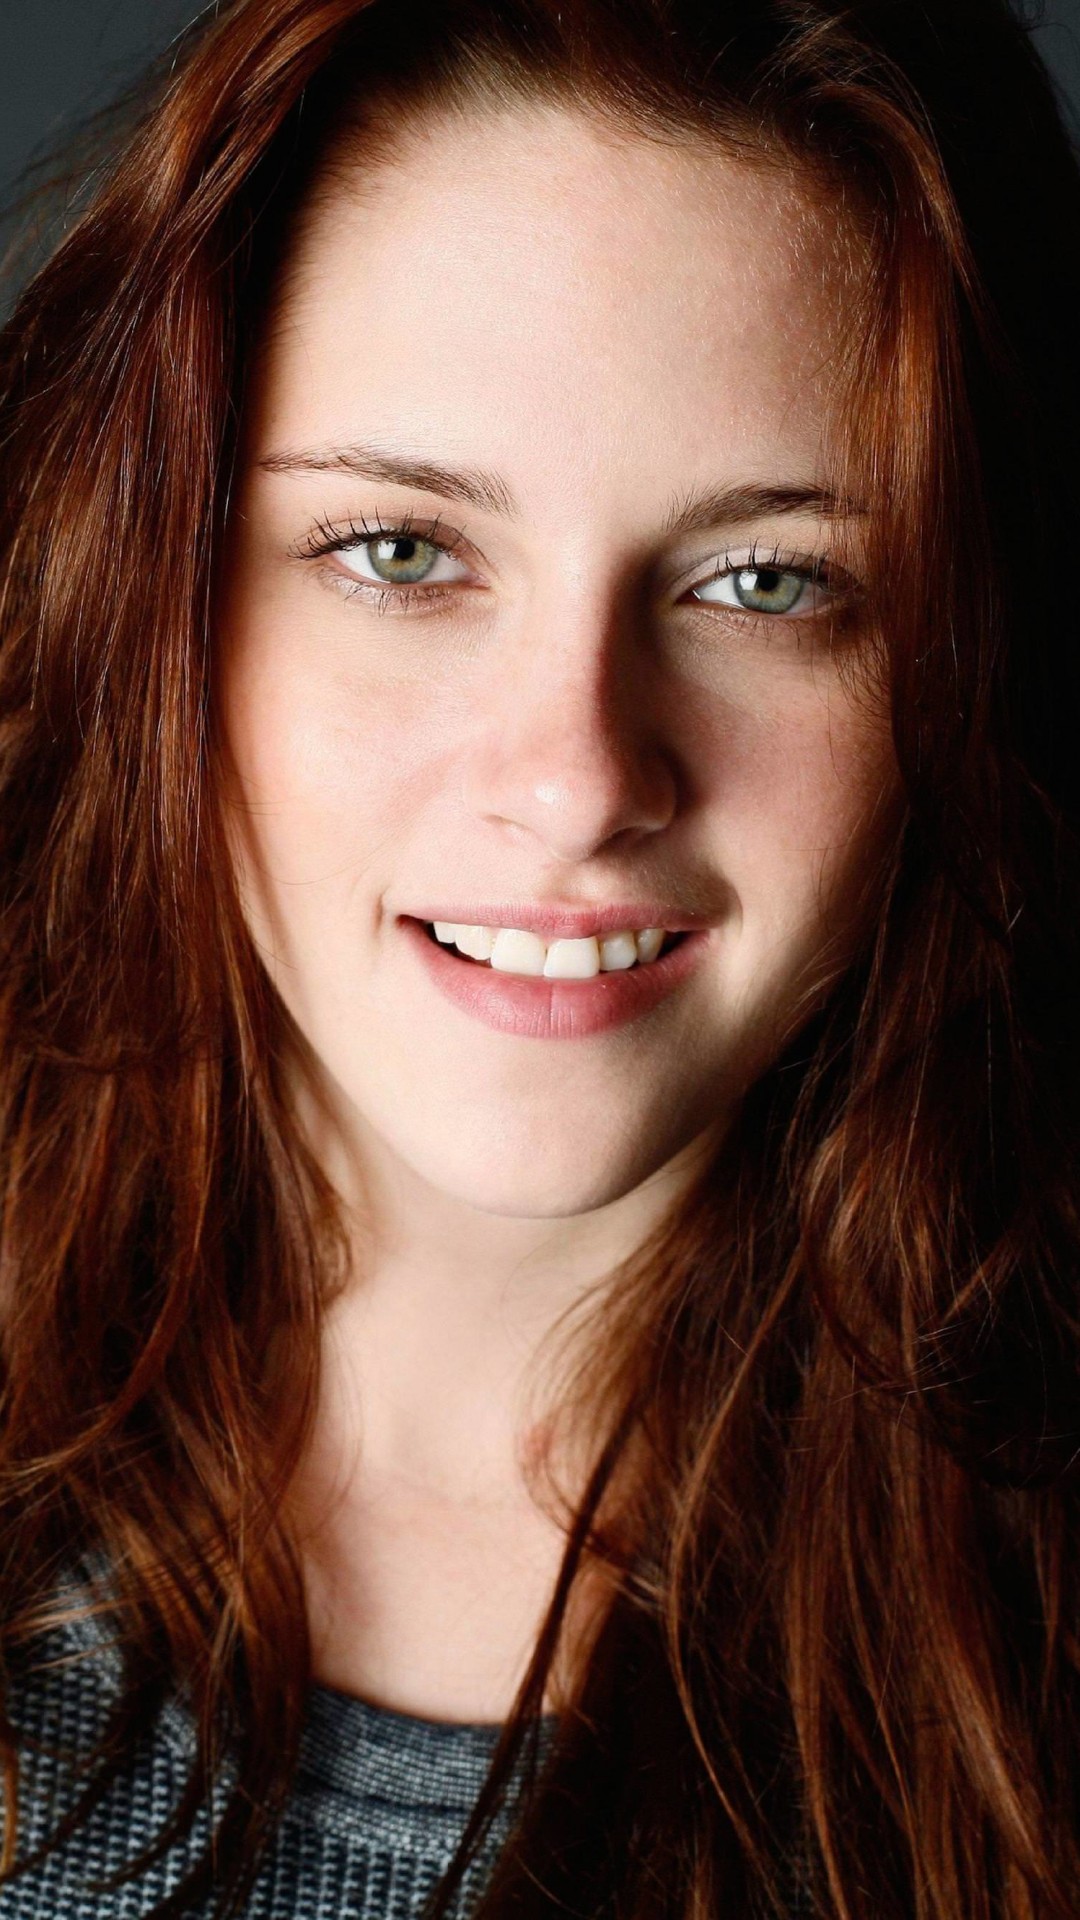 Kristen Stewart Portrait Wallpaper for Google Nexus 5